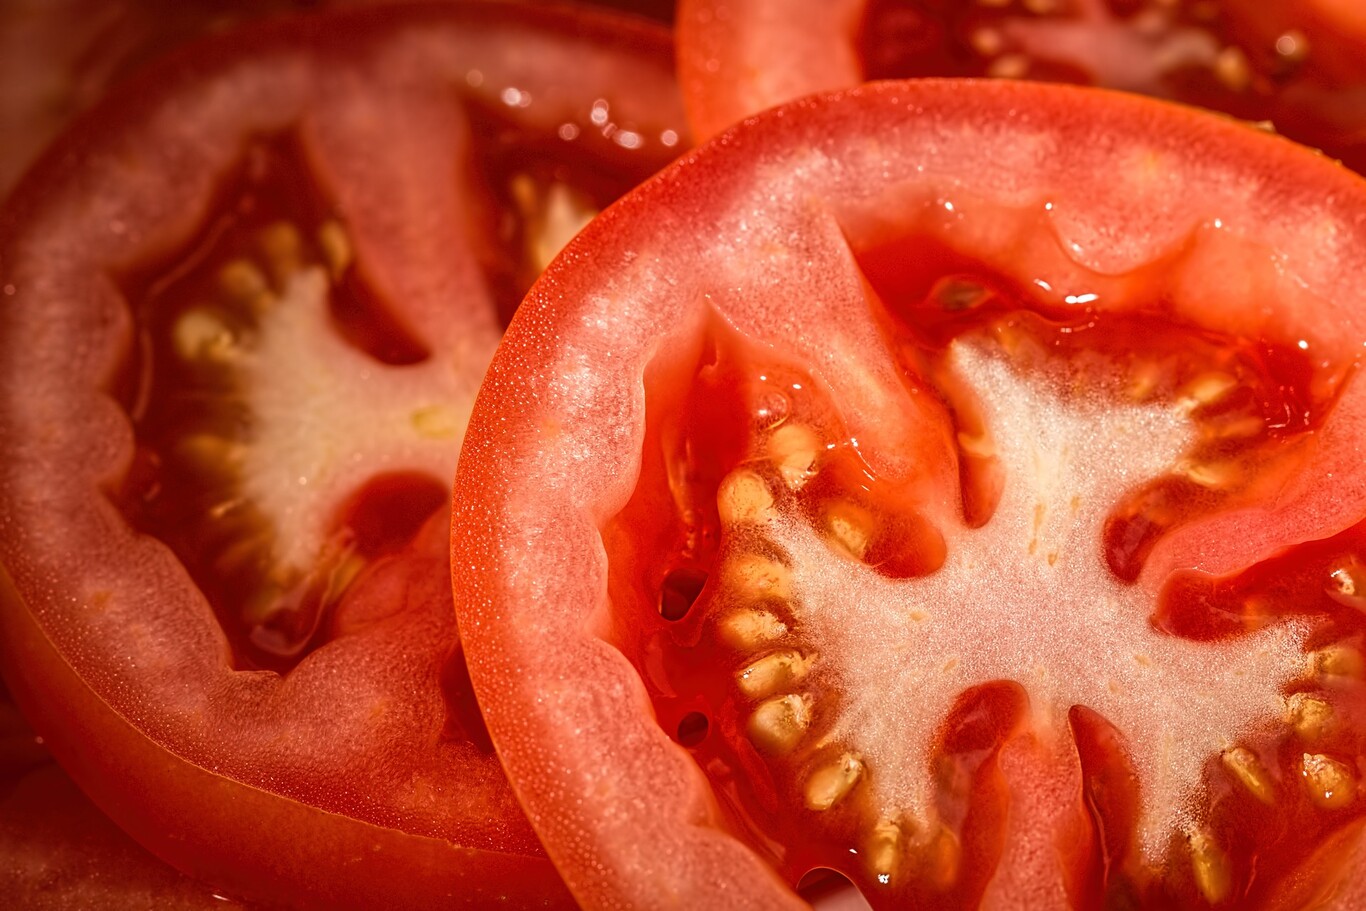 Mascarilla de tomate para eliminar manchas, arrugas y acné